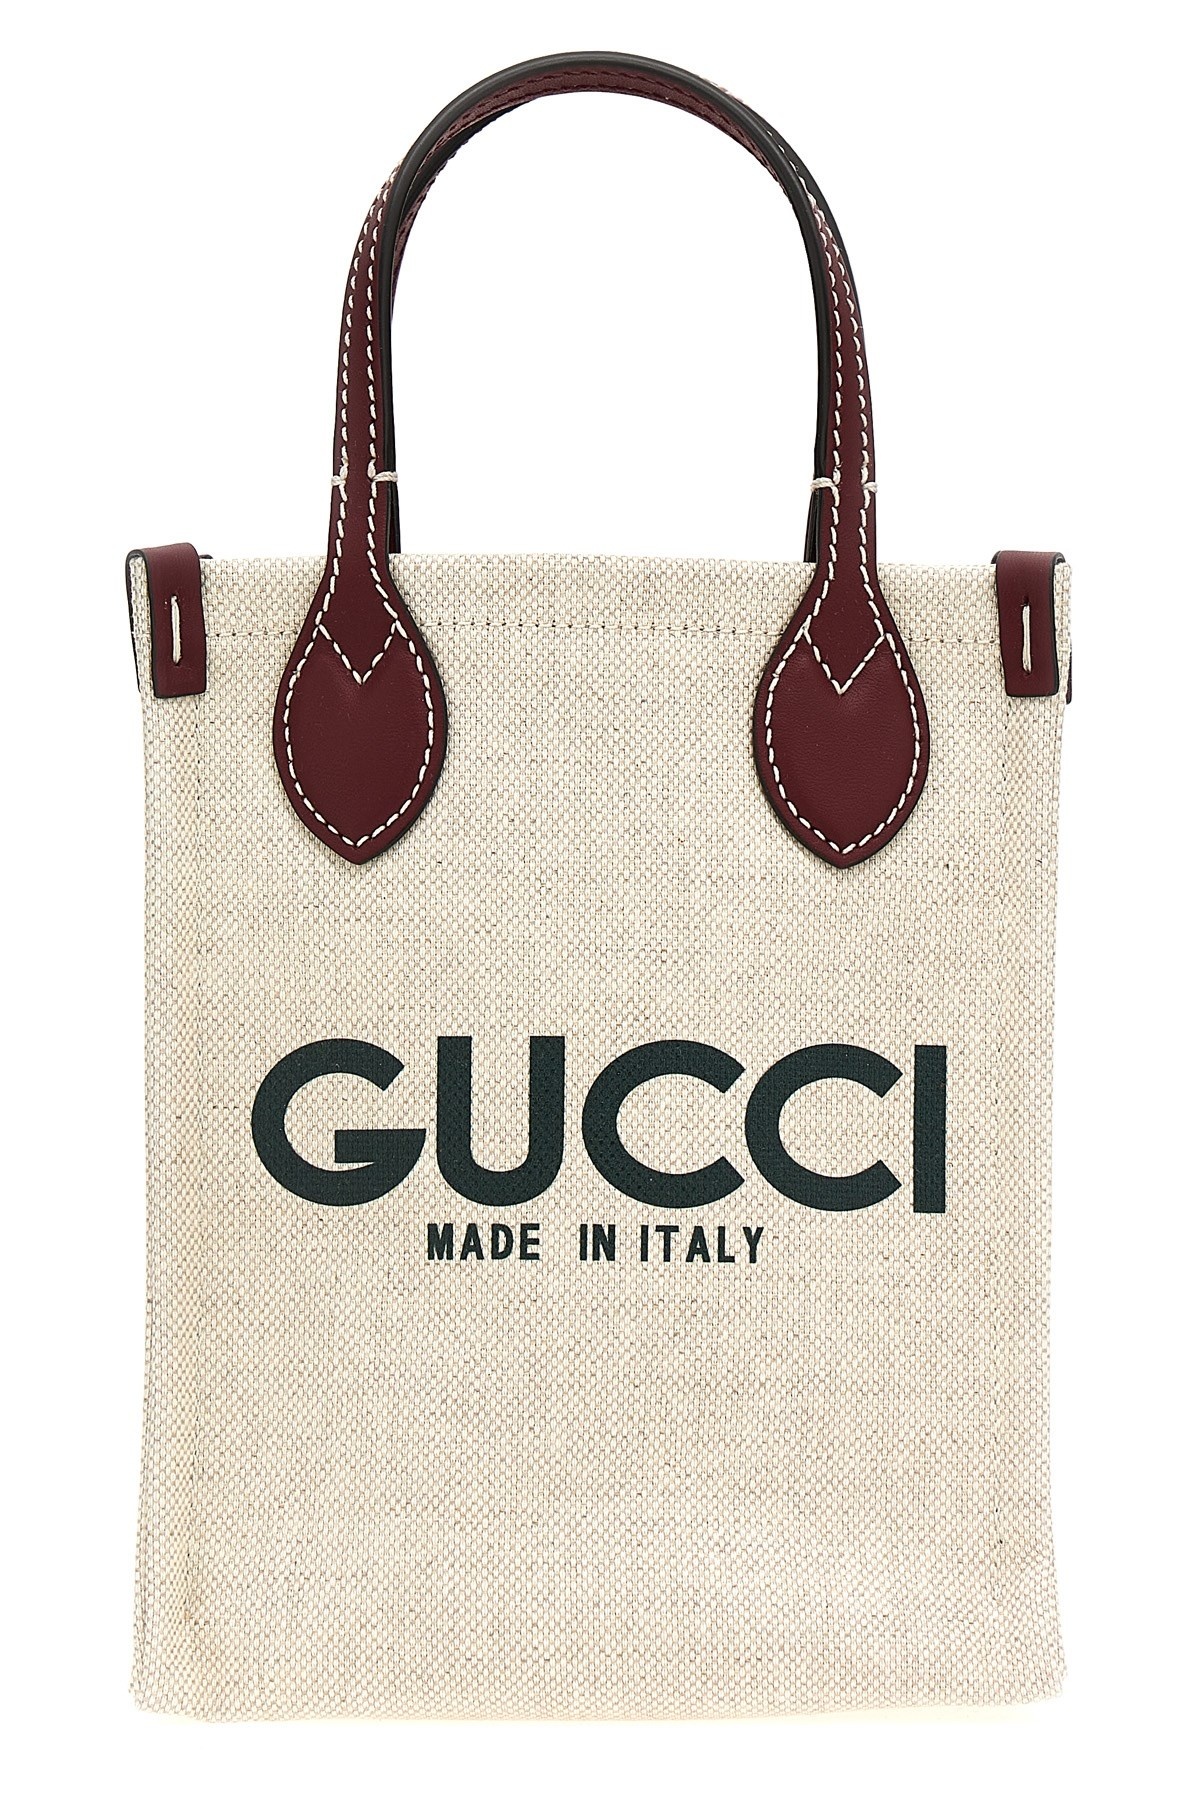 'Gucci' handbag - 1